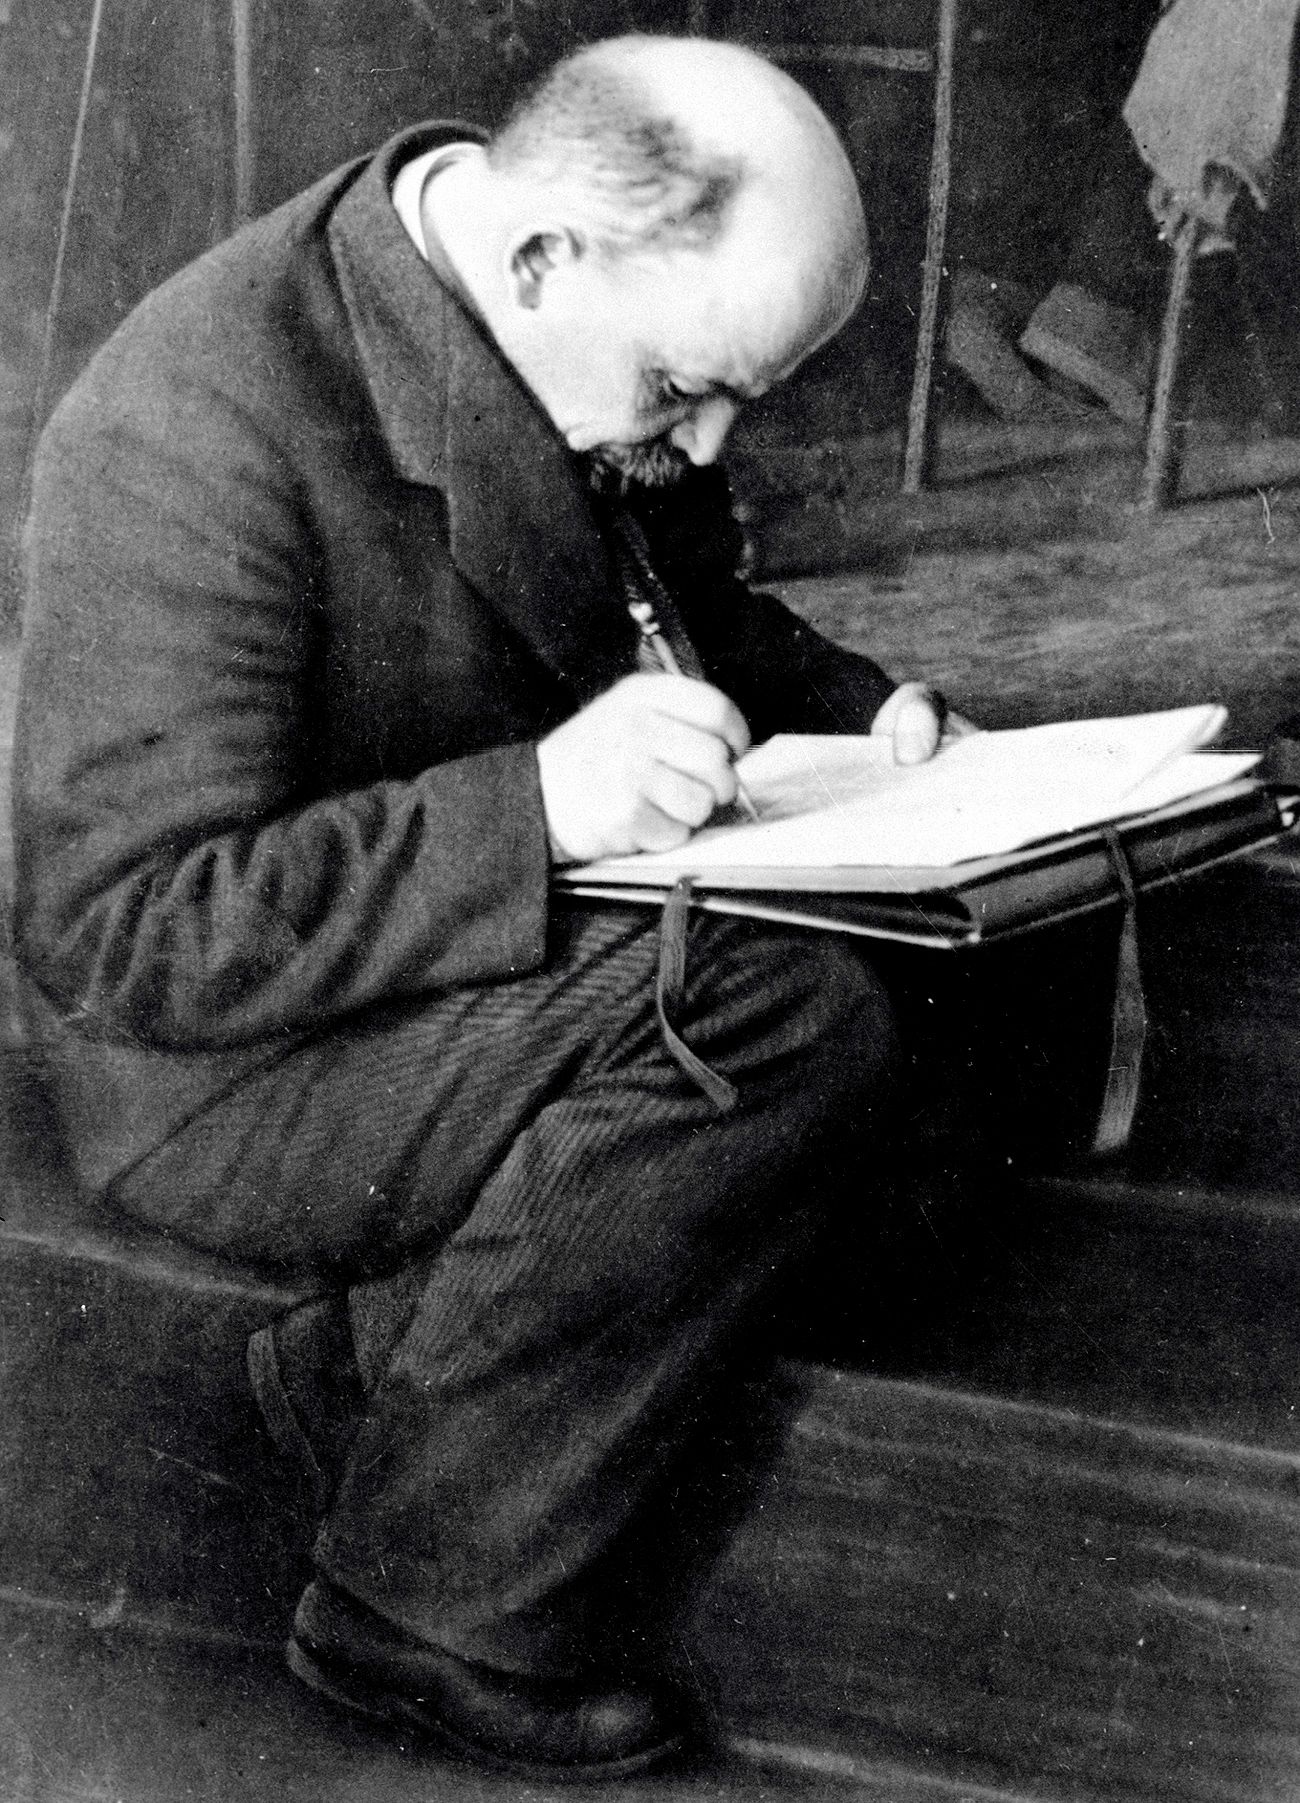 Lenin inventing Ukraine